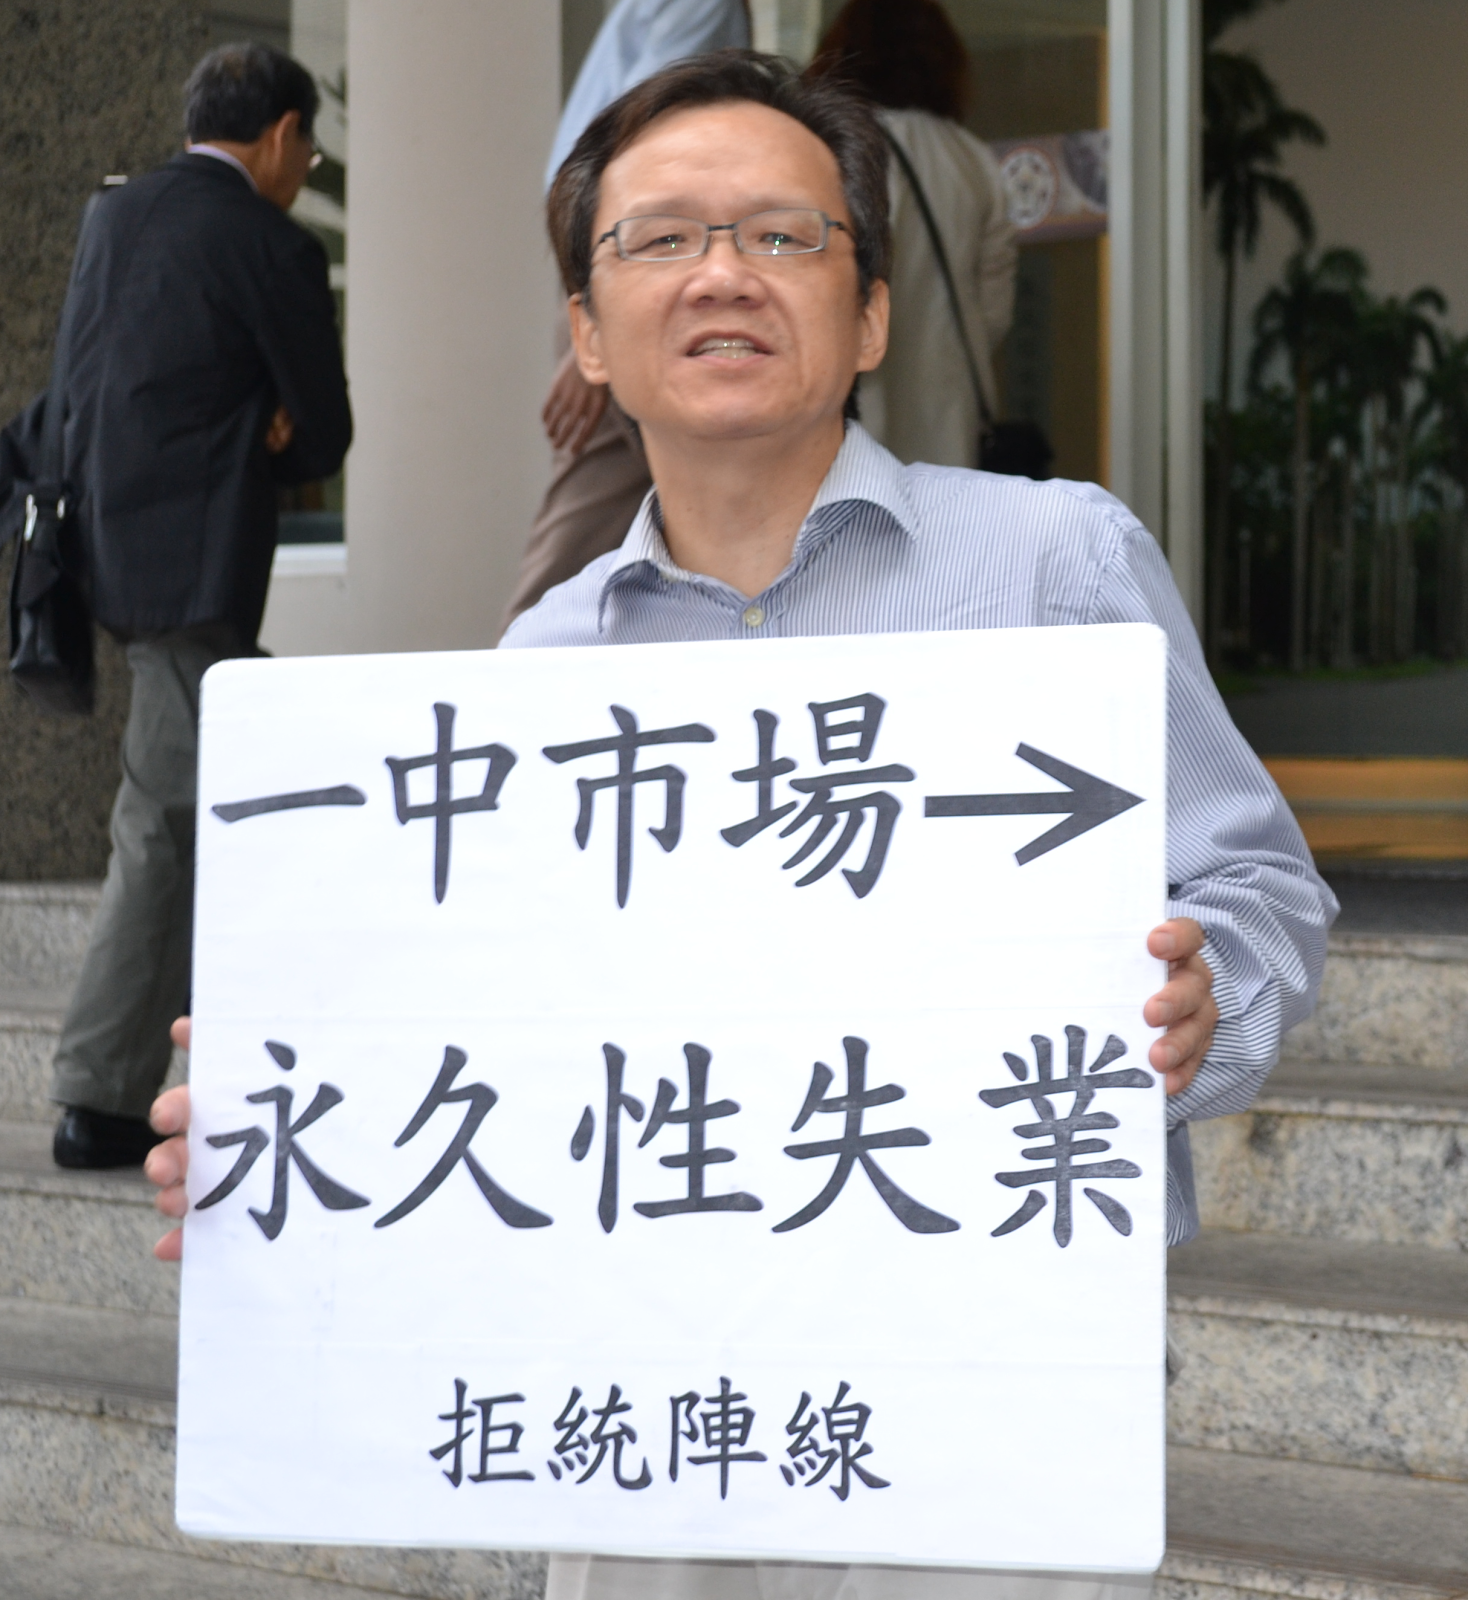 20111019 陳立民 Chen Lih Ming (陳哲) 執「一中市場帶來永久性失業」標語 在蔡英文總統選戰的場合 在媒體前抗議國民黨的「一中原則」